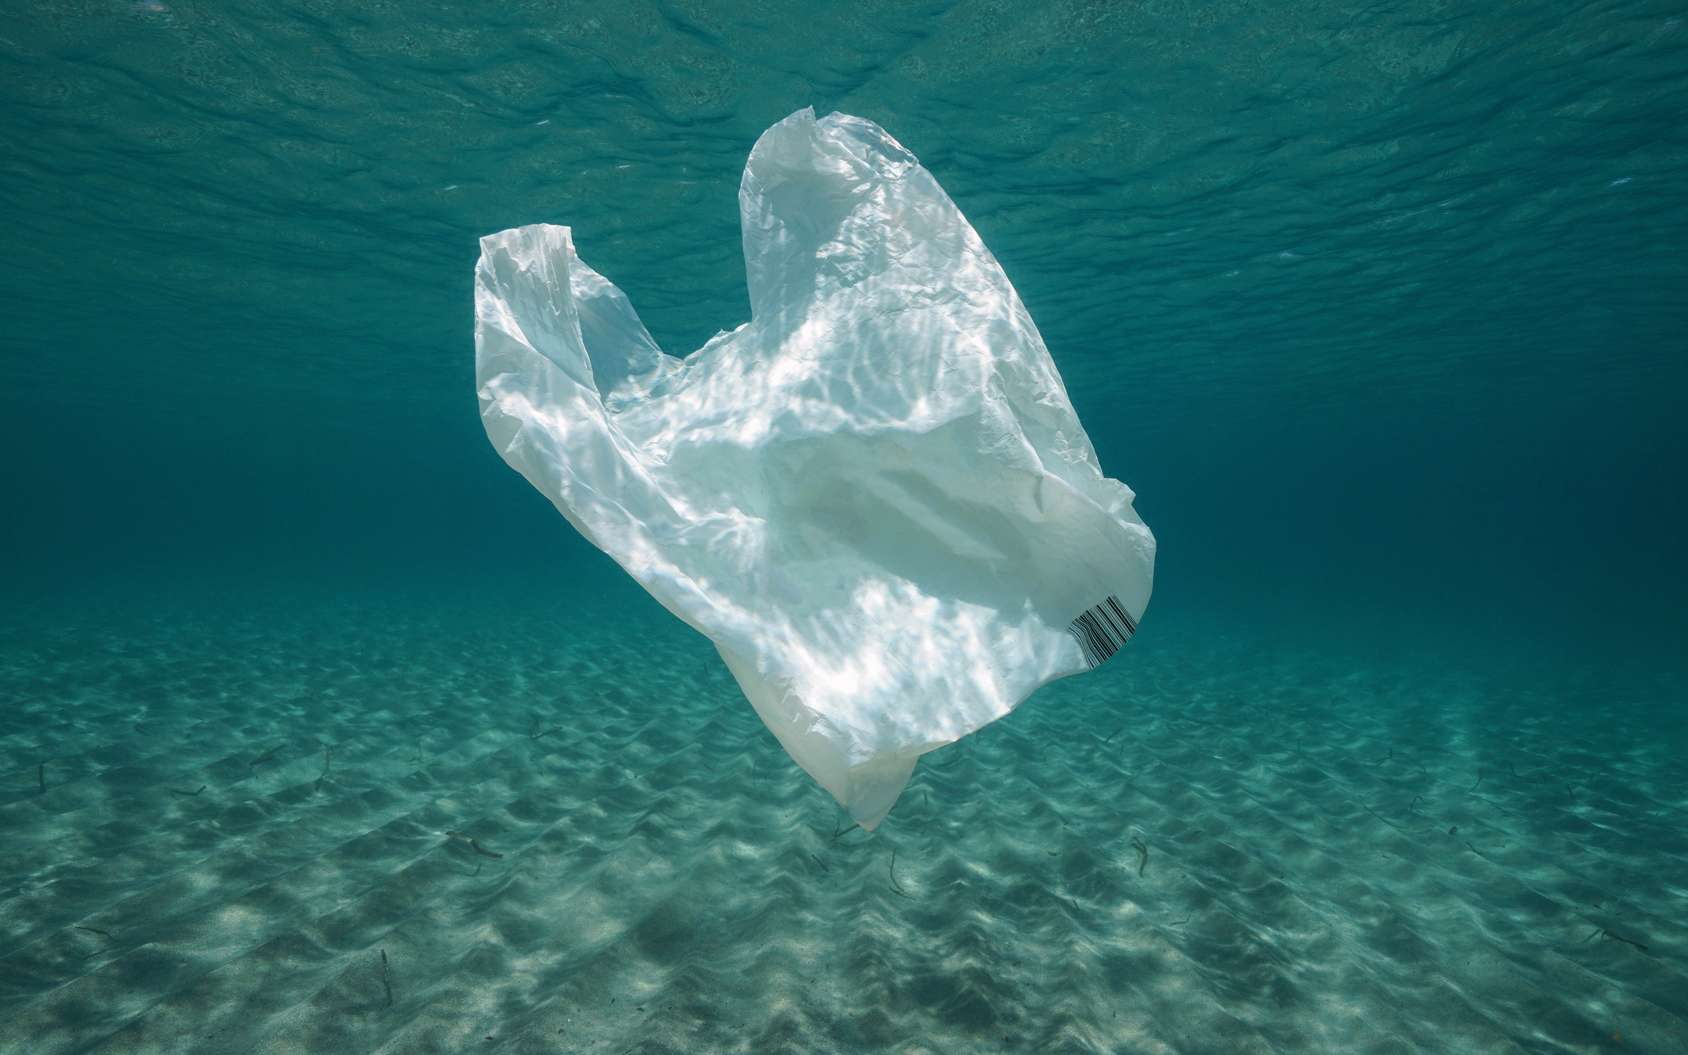 Des sacs plastiques qui se dissolvent dans l'eau